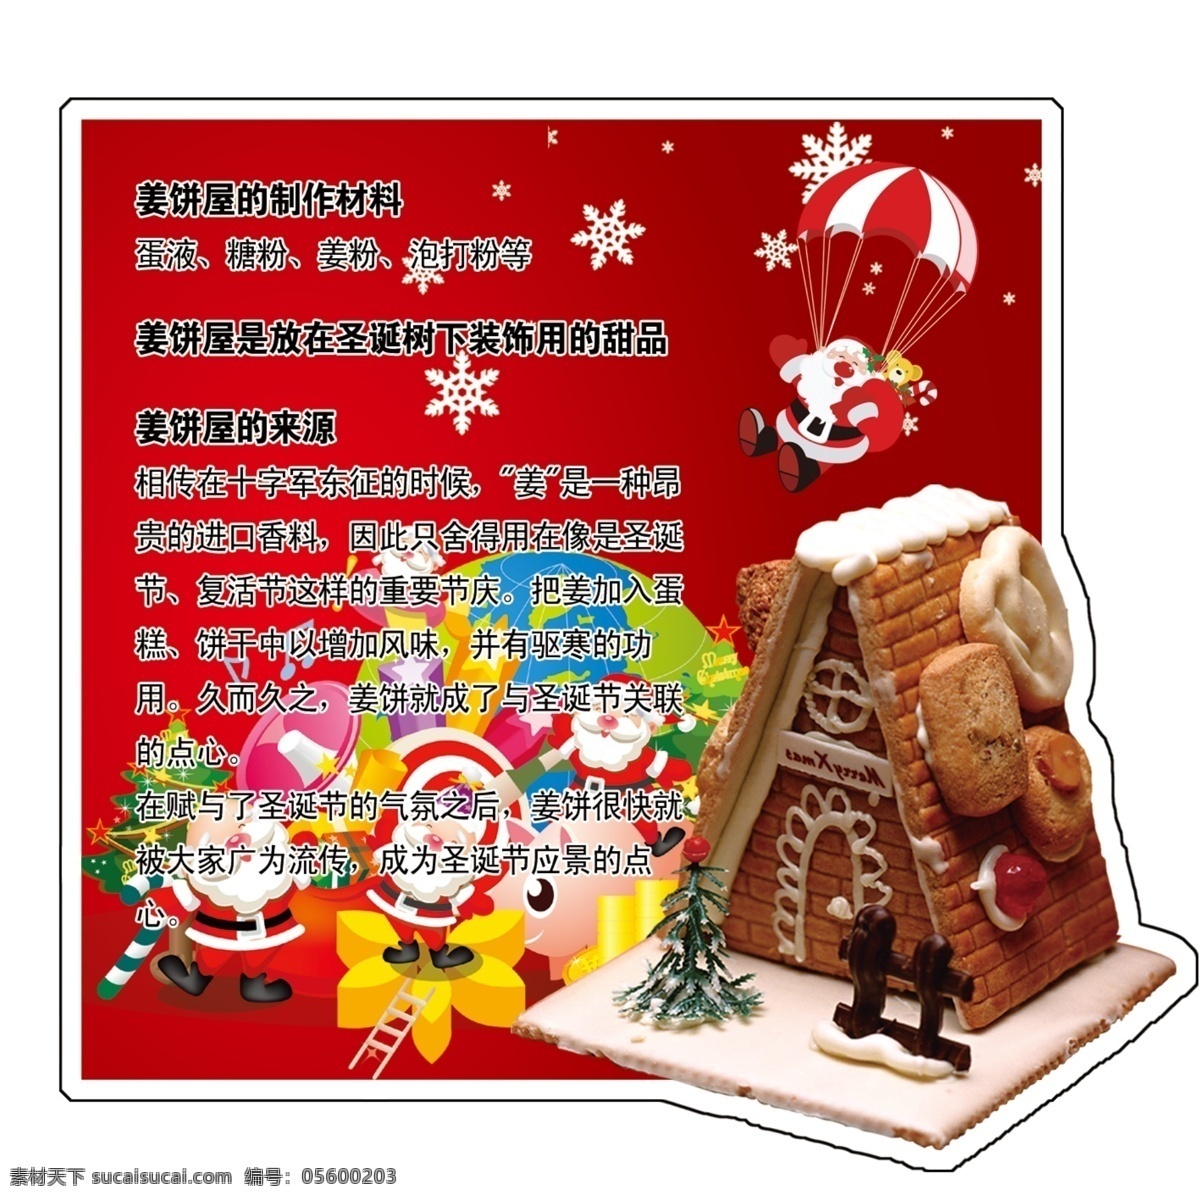 广告设计模板 礼盒 圣诞老人 糖果 源文件 姜饼 屋 模板下载 姜饼屋 来源 原料 矢量图 其他矢量图